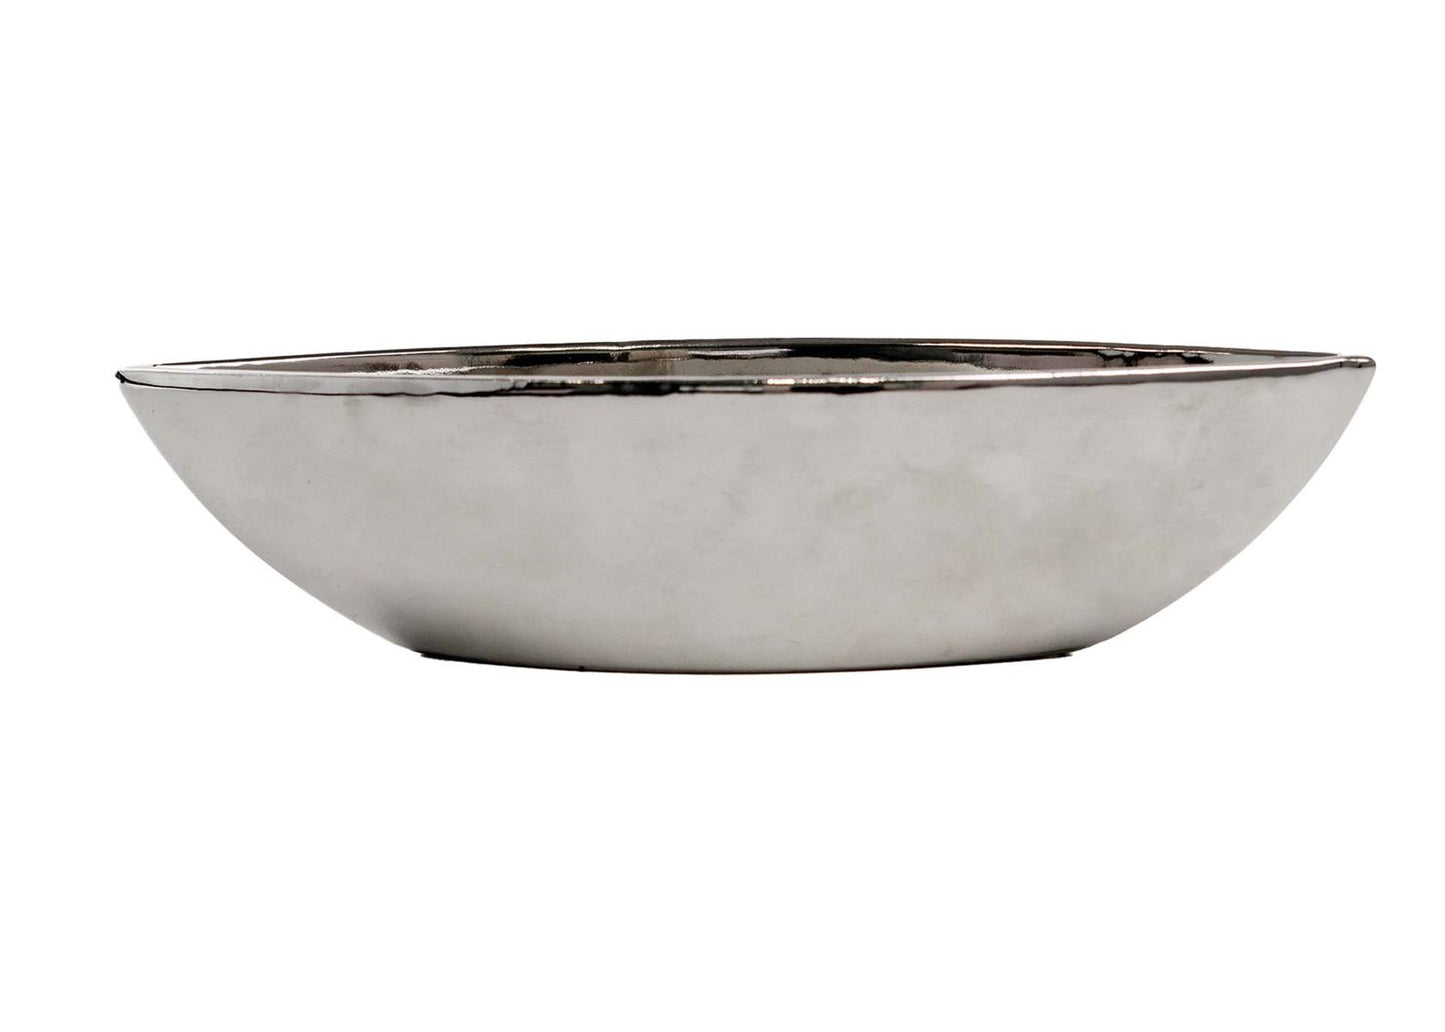 10 Inch Ceramic Boat Vase - Silver